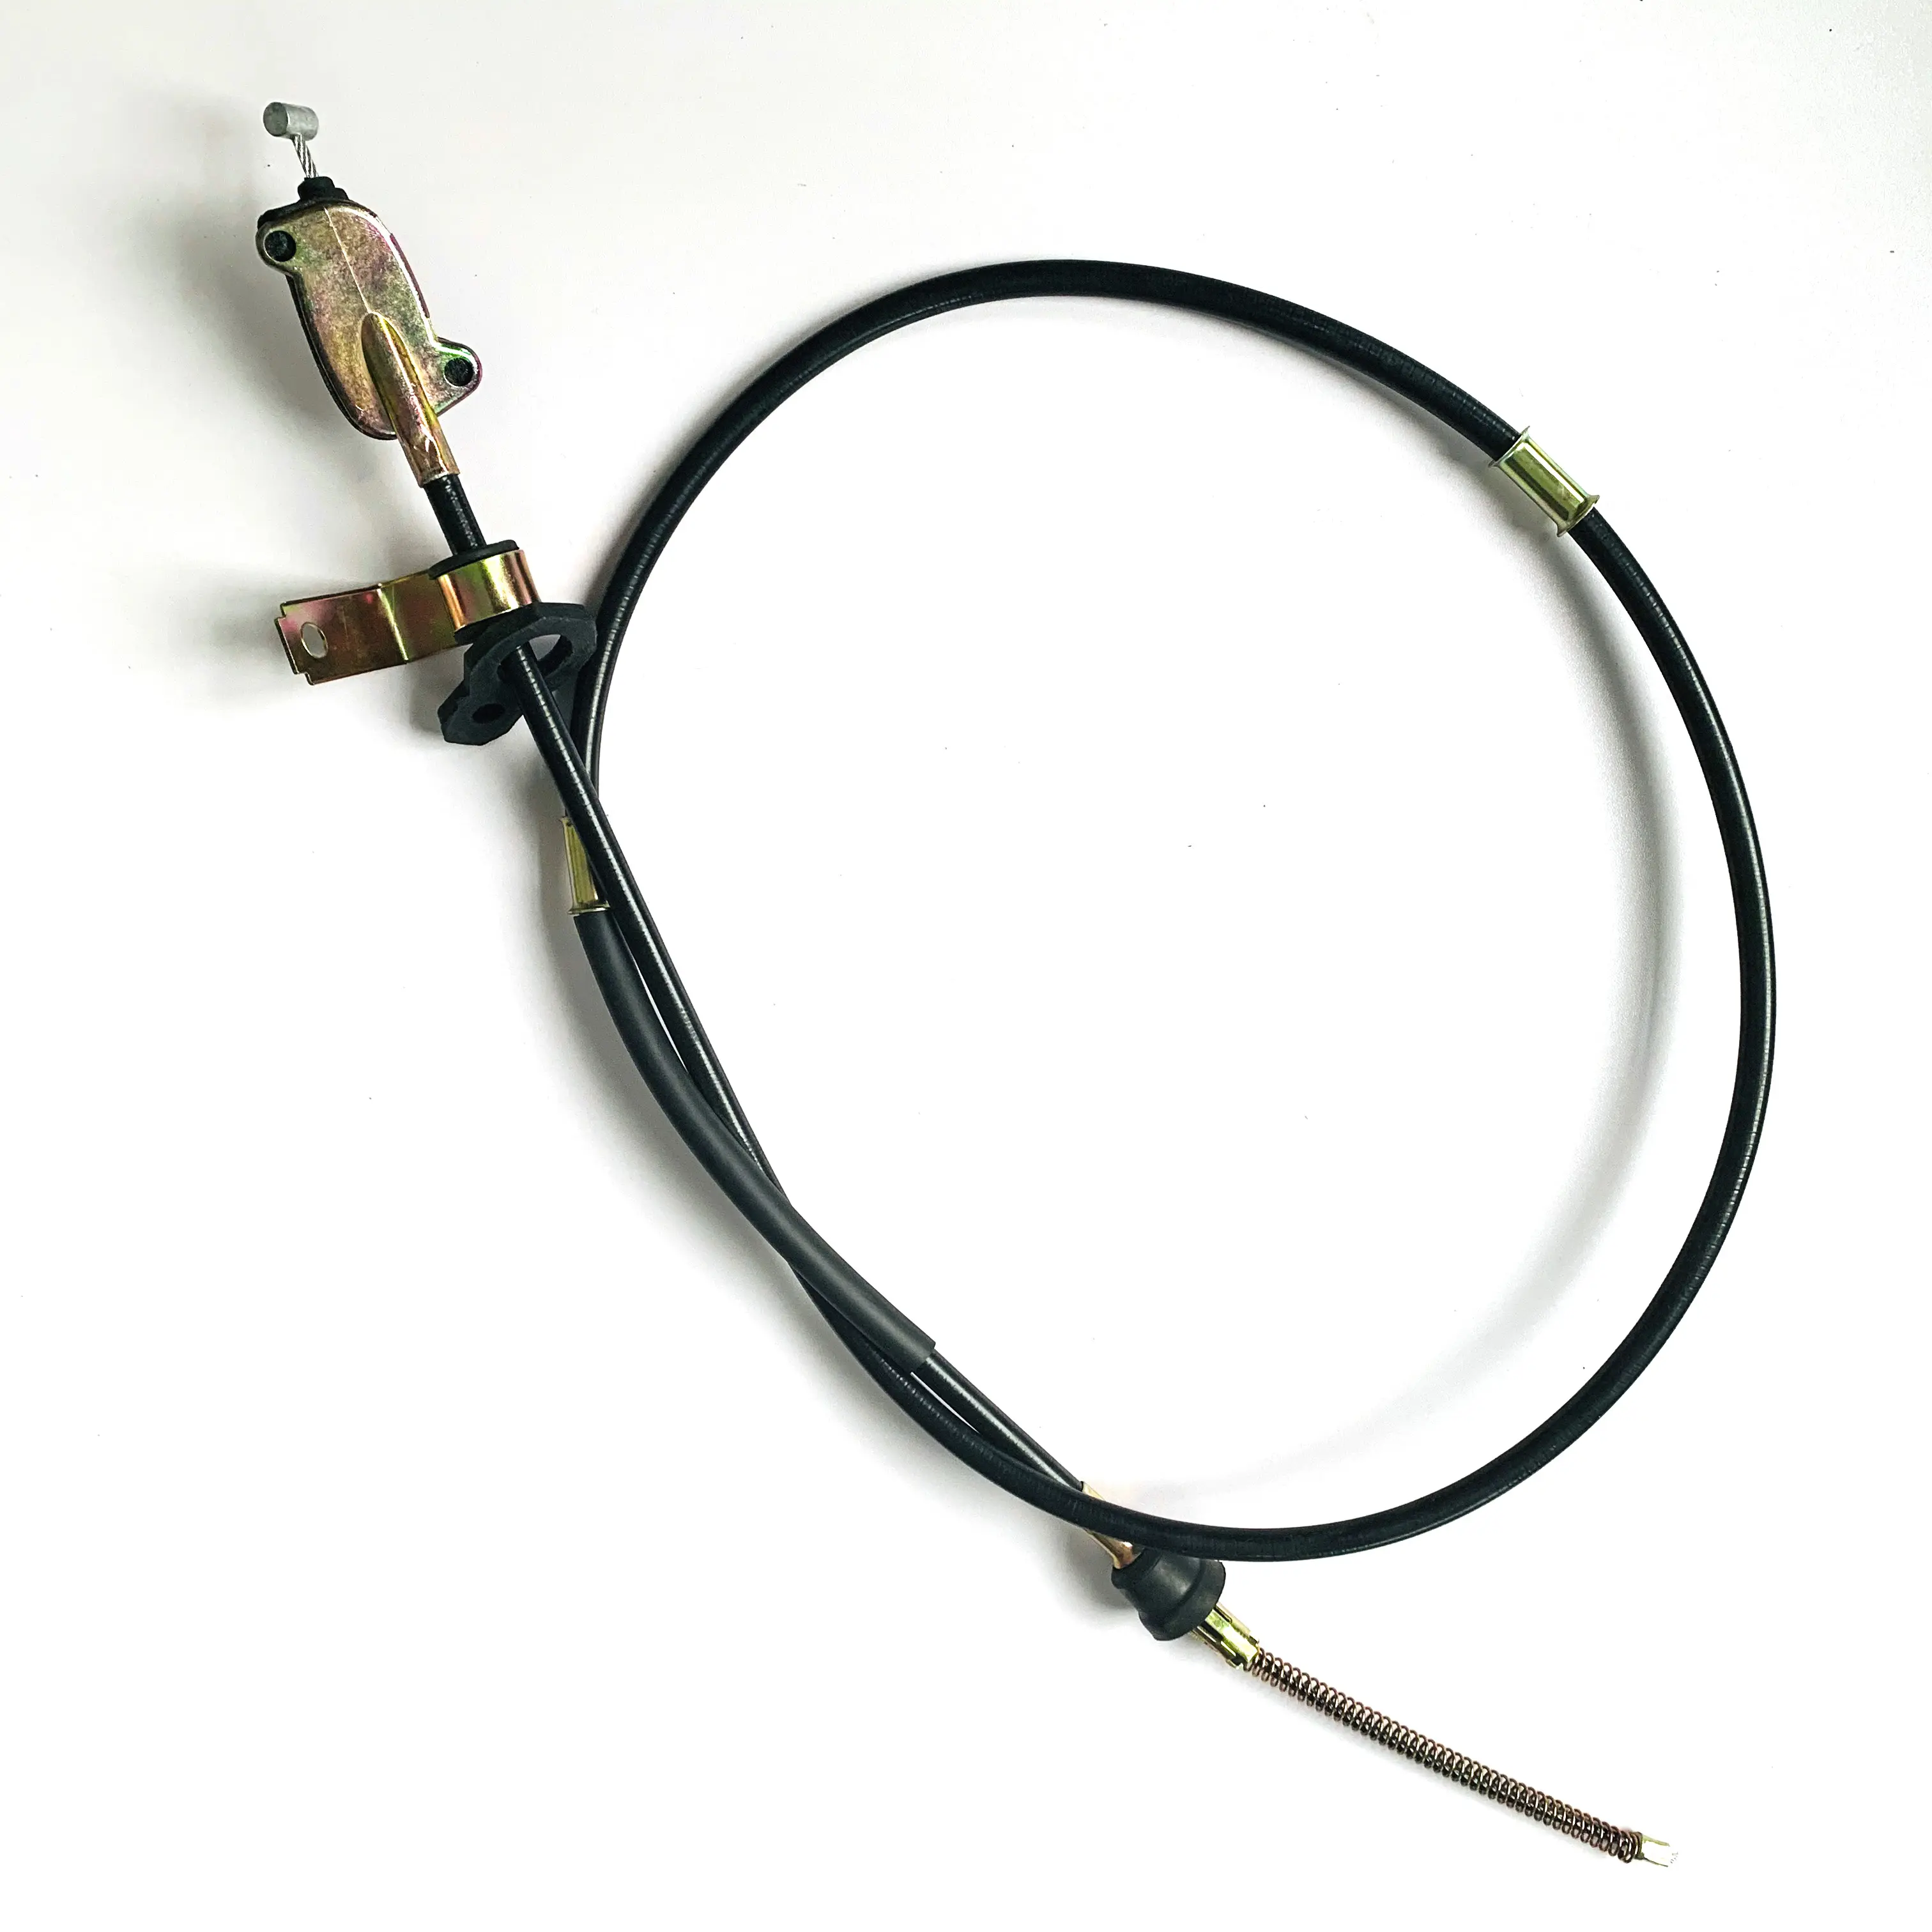 The beliebtesten auto bremse kabel ist verwendet für auto teile gas brems end brems ende kabel